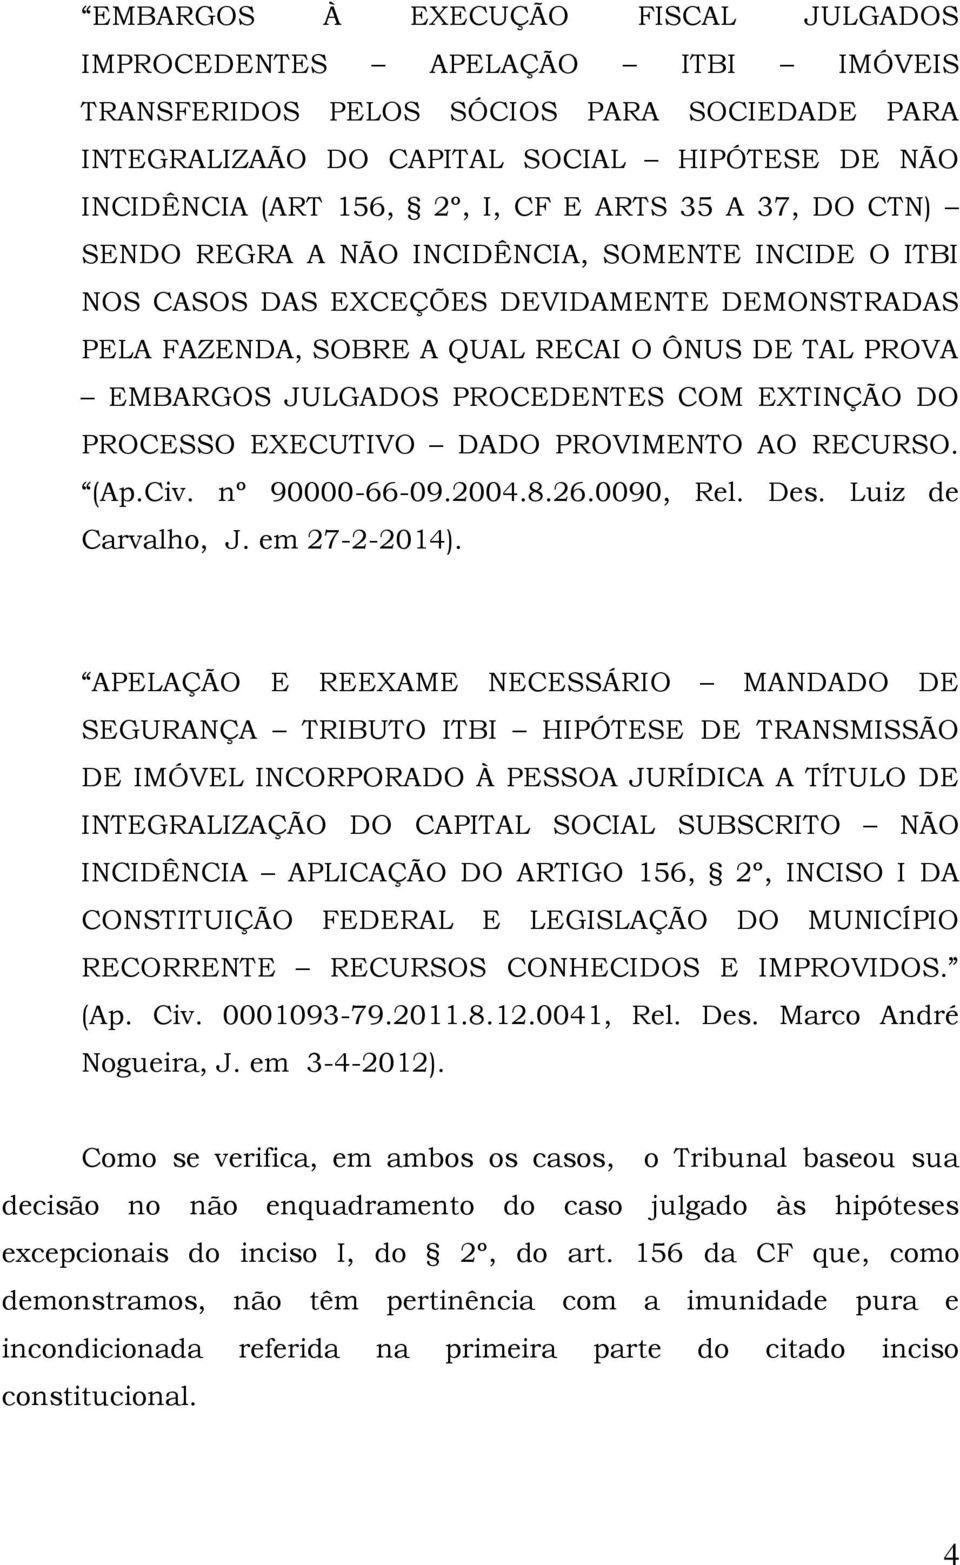 PROCEDENTES COM EXTINÇÃO DO PROCESSO EXECUTIVO DADO PROVIMENTO AO RECURSO. (Ap.Civ. nº 90000-66-09.2004.8.26.0090, Rel. Des. Luiz de Carvalho, J. em 27-2-2014).